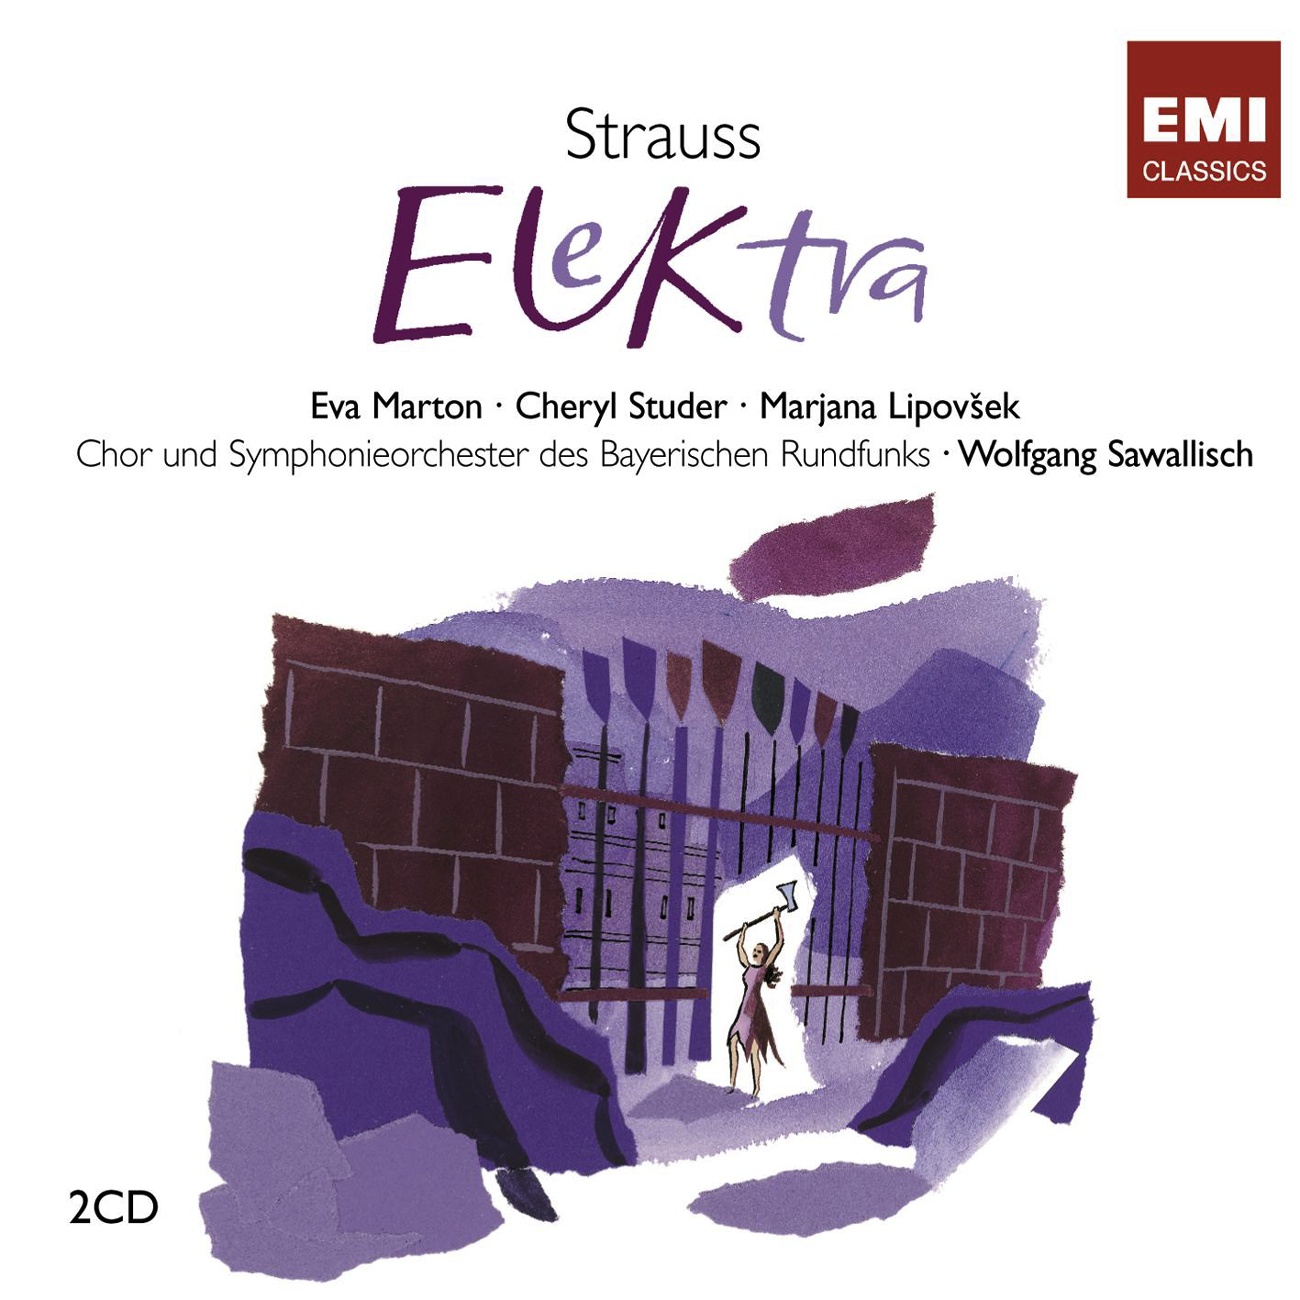 Elektra, Op.58: Schweig und tanze! (Elektra/Chrysothemis)